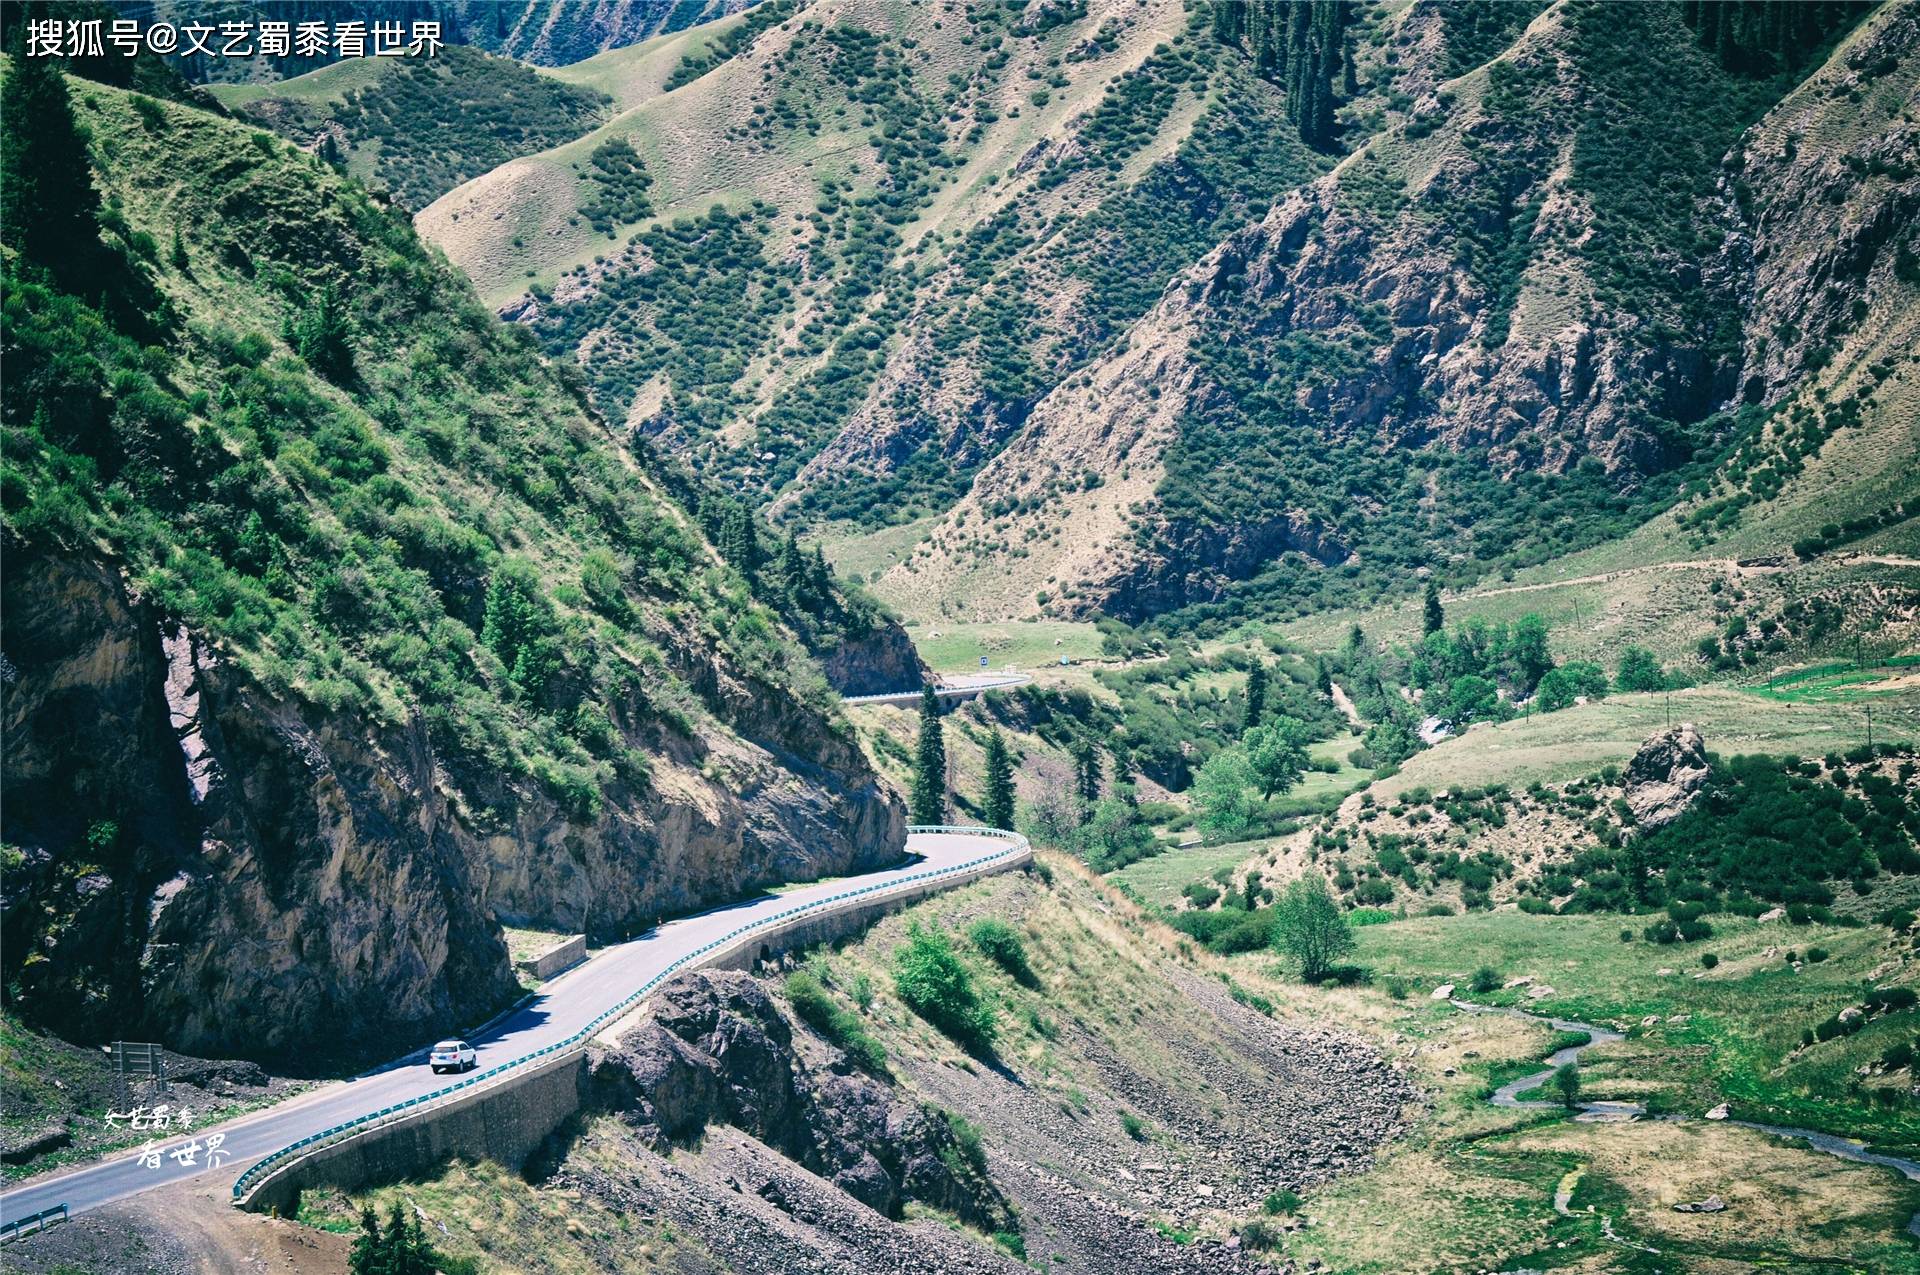 新疆最美的风光都在独库公路上,它是一条让人自驾上瘾的公路